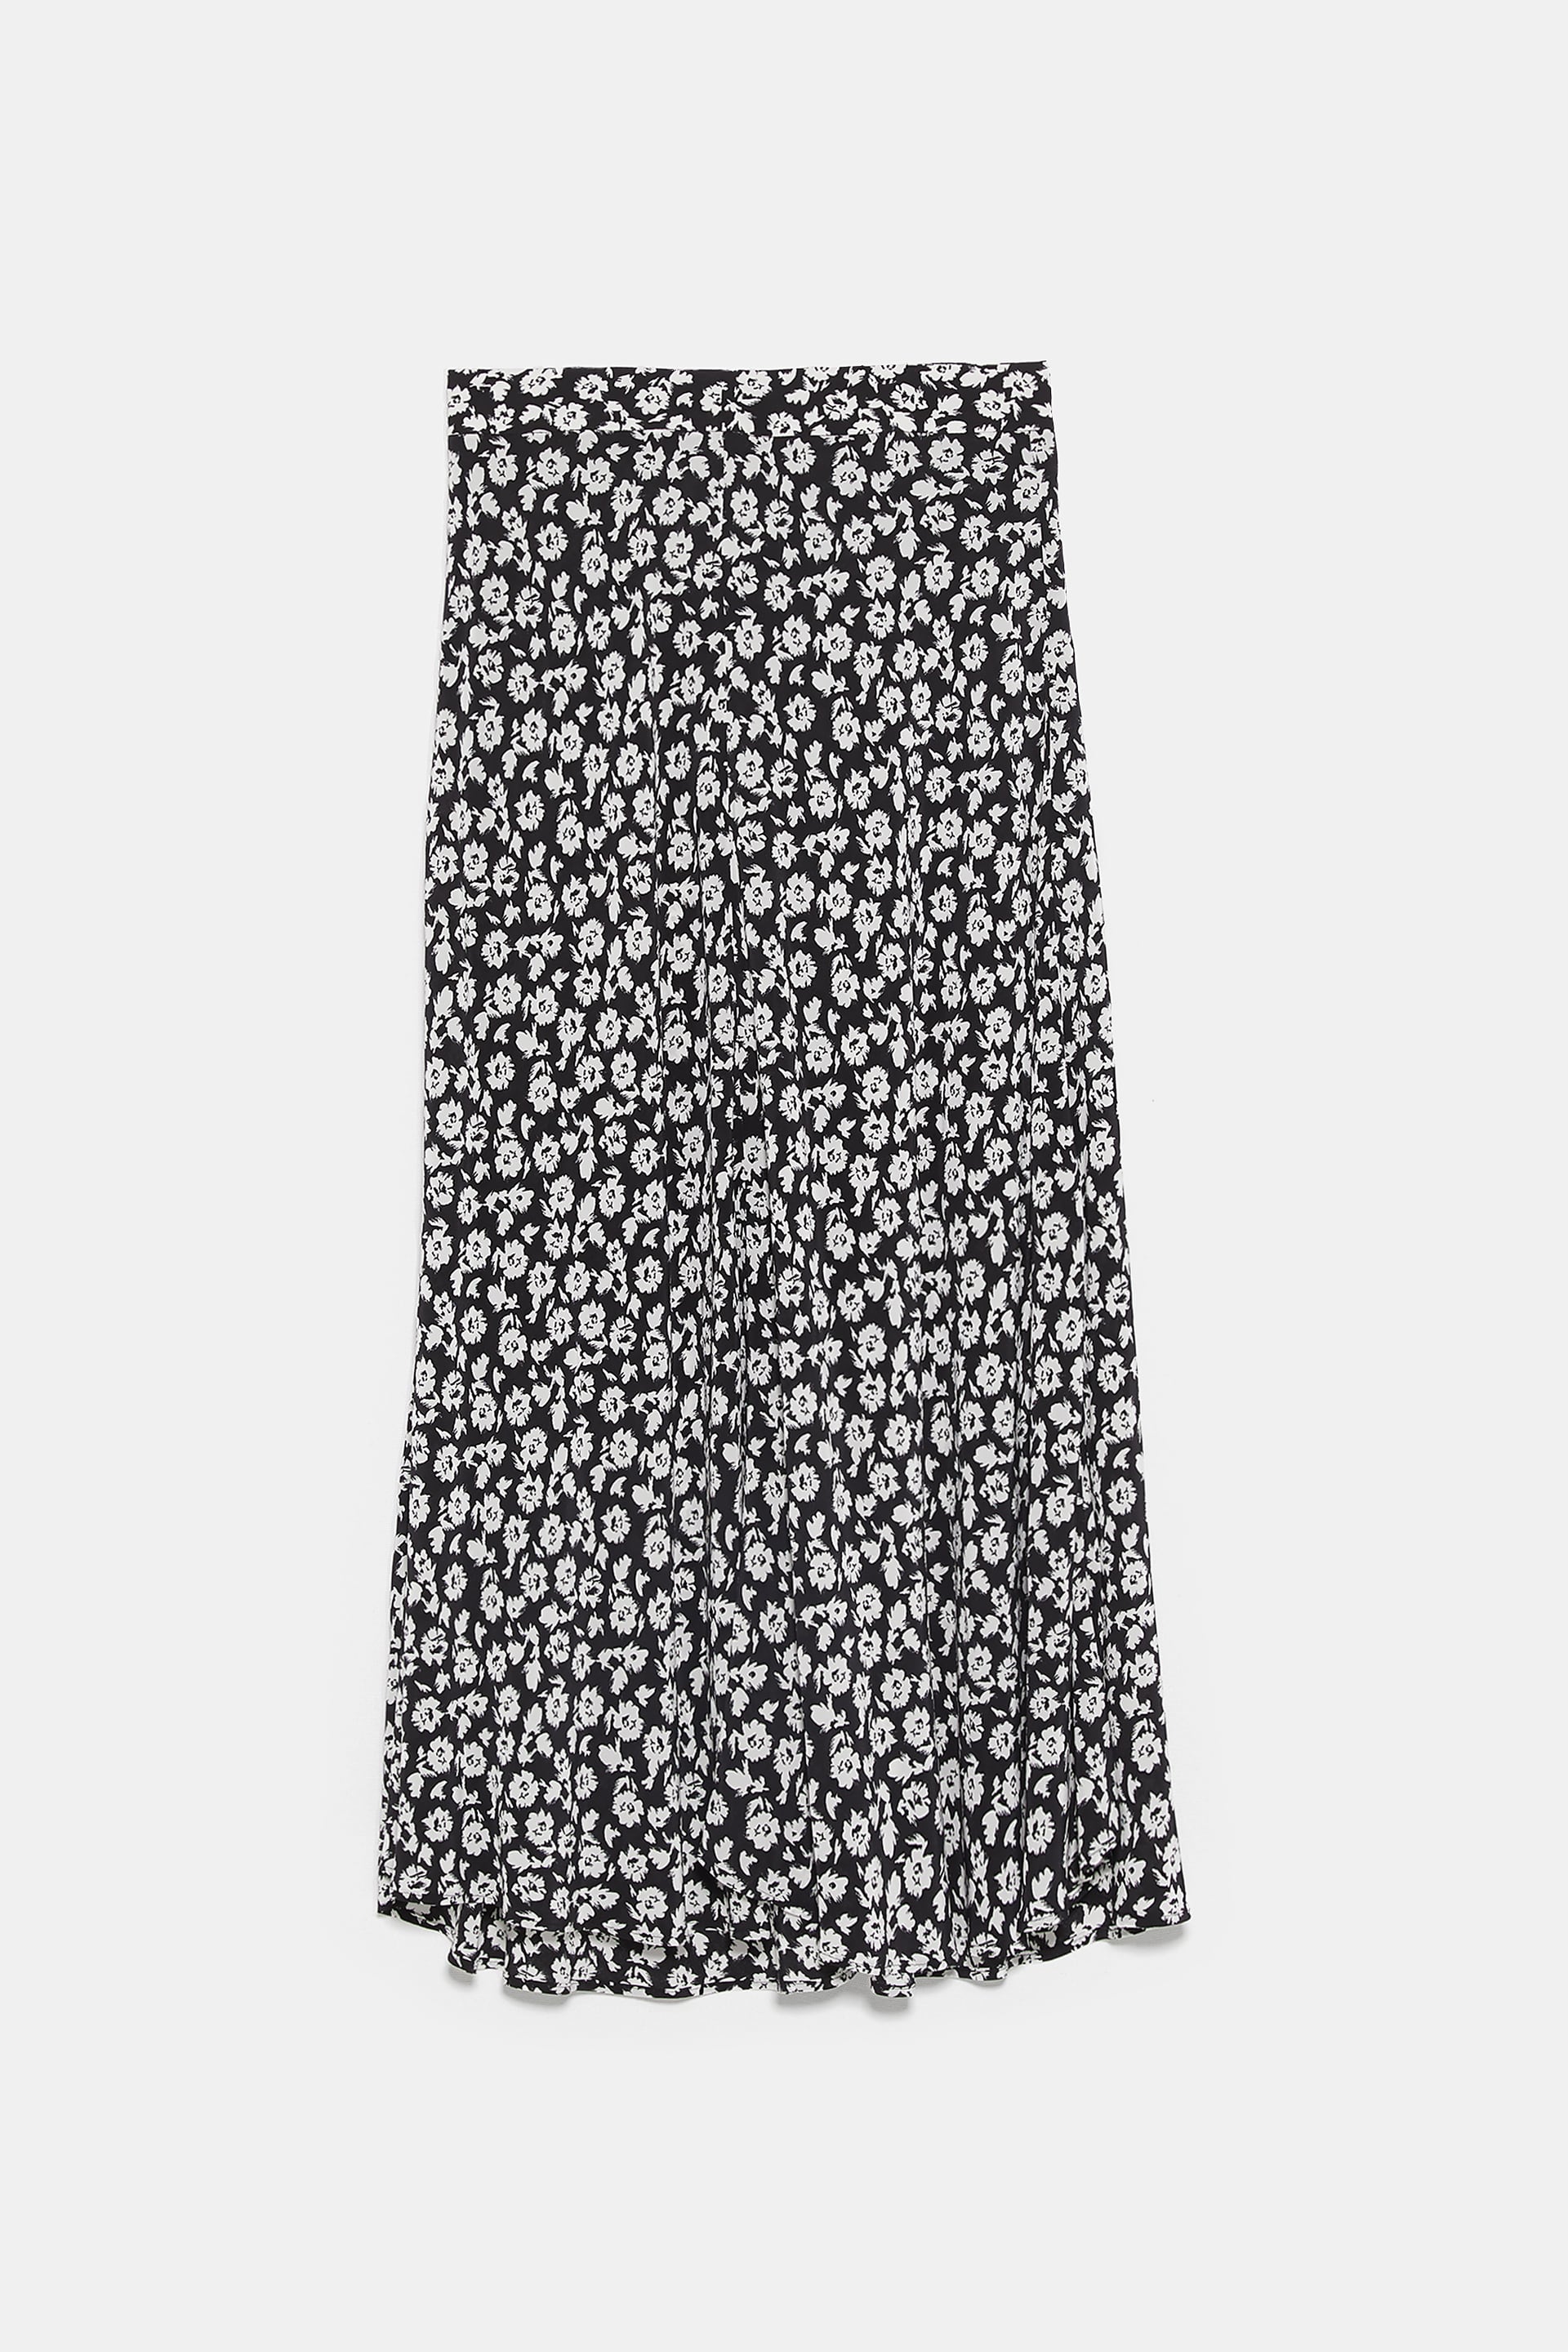 XL Zara Black Floral Print Midi Long Skirt Size M L 